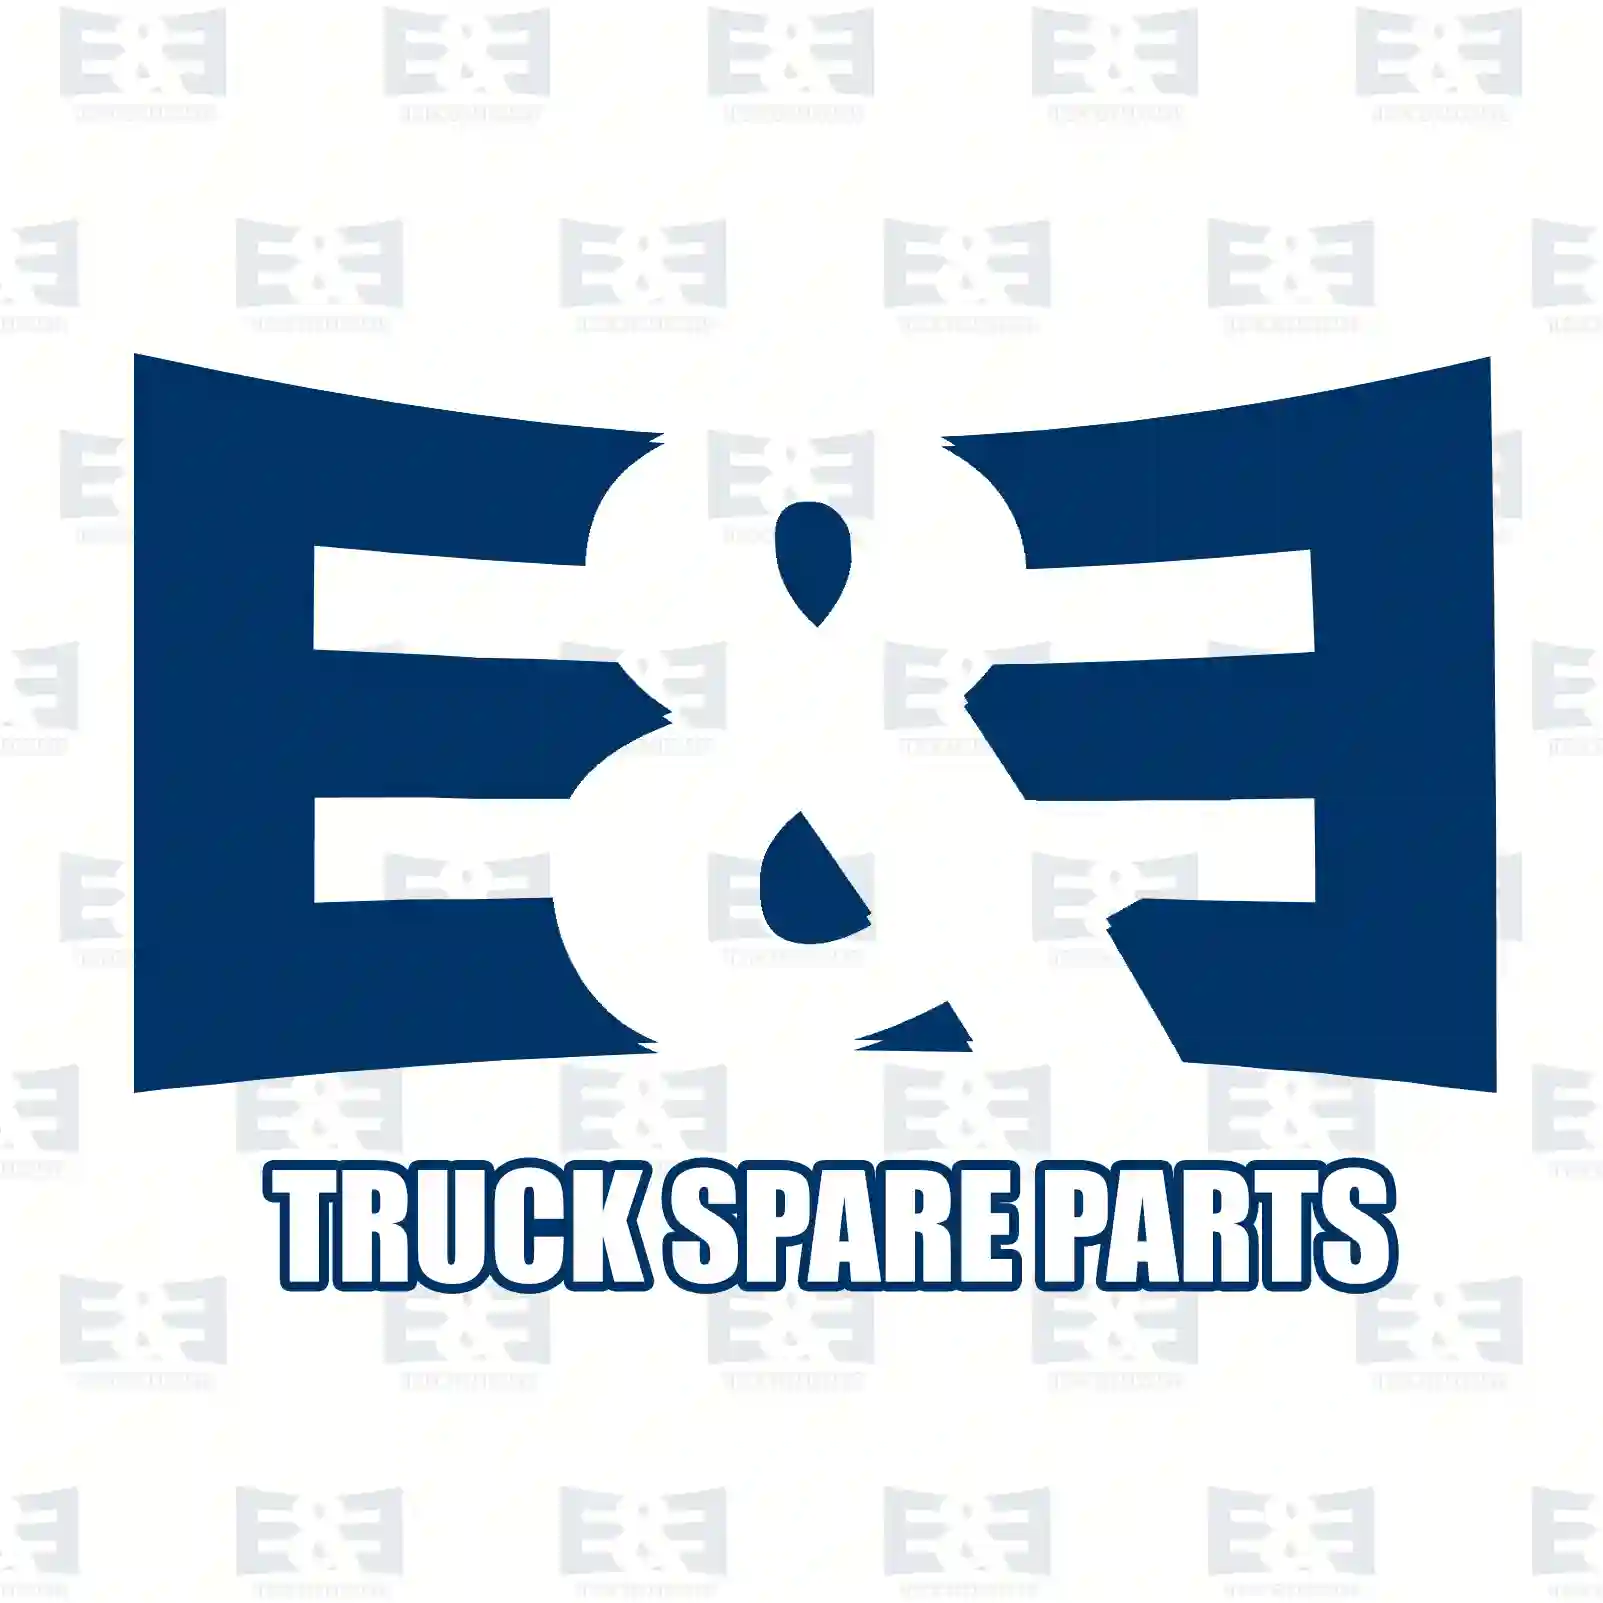 Guide sleeve, 2E2278761, 1521920, 20588772, 20858492, 8171944, 8172497 ||  2E2278761 E&E Truck Spare Parts | Truck Spare Parts, Auotomotive Spare Parts Guide sleeve, 2E2278761, 1521920, 20588772, 20858492, 8171944, 8172497 ||  2E2278761 E&E Truck Spare Parts | Truck Spare Parts, Auotomotive Spare Parts